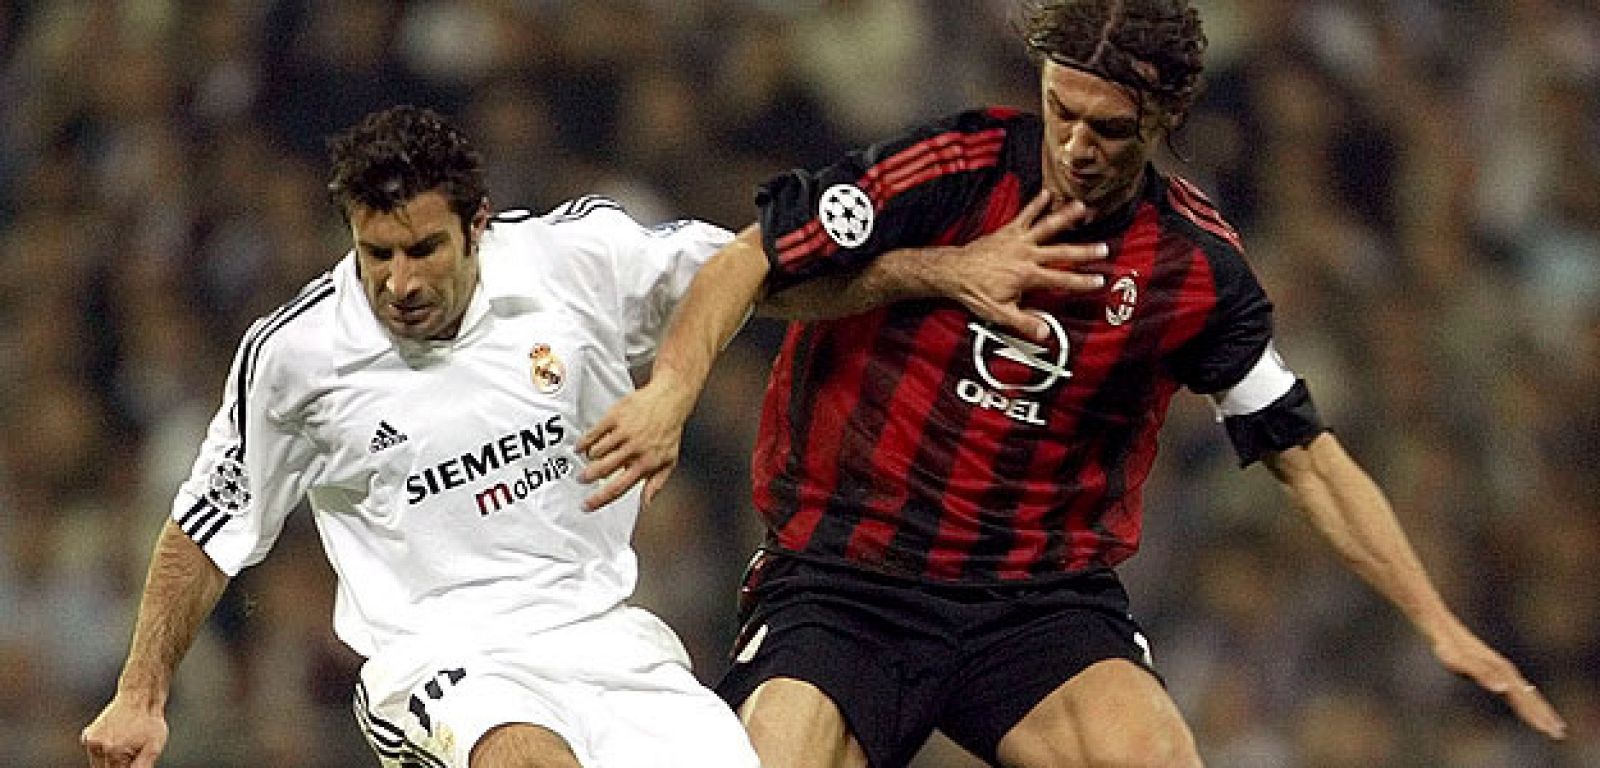 El último enfrentamiento entre los dos fue en la Champions de 2003, ganó el Madrid.